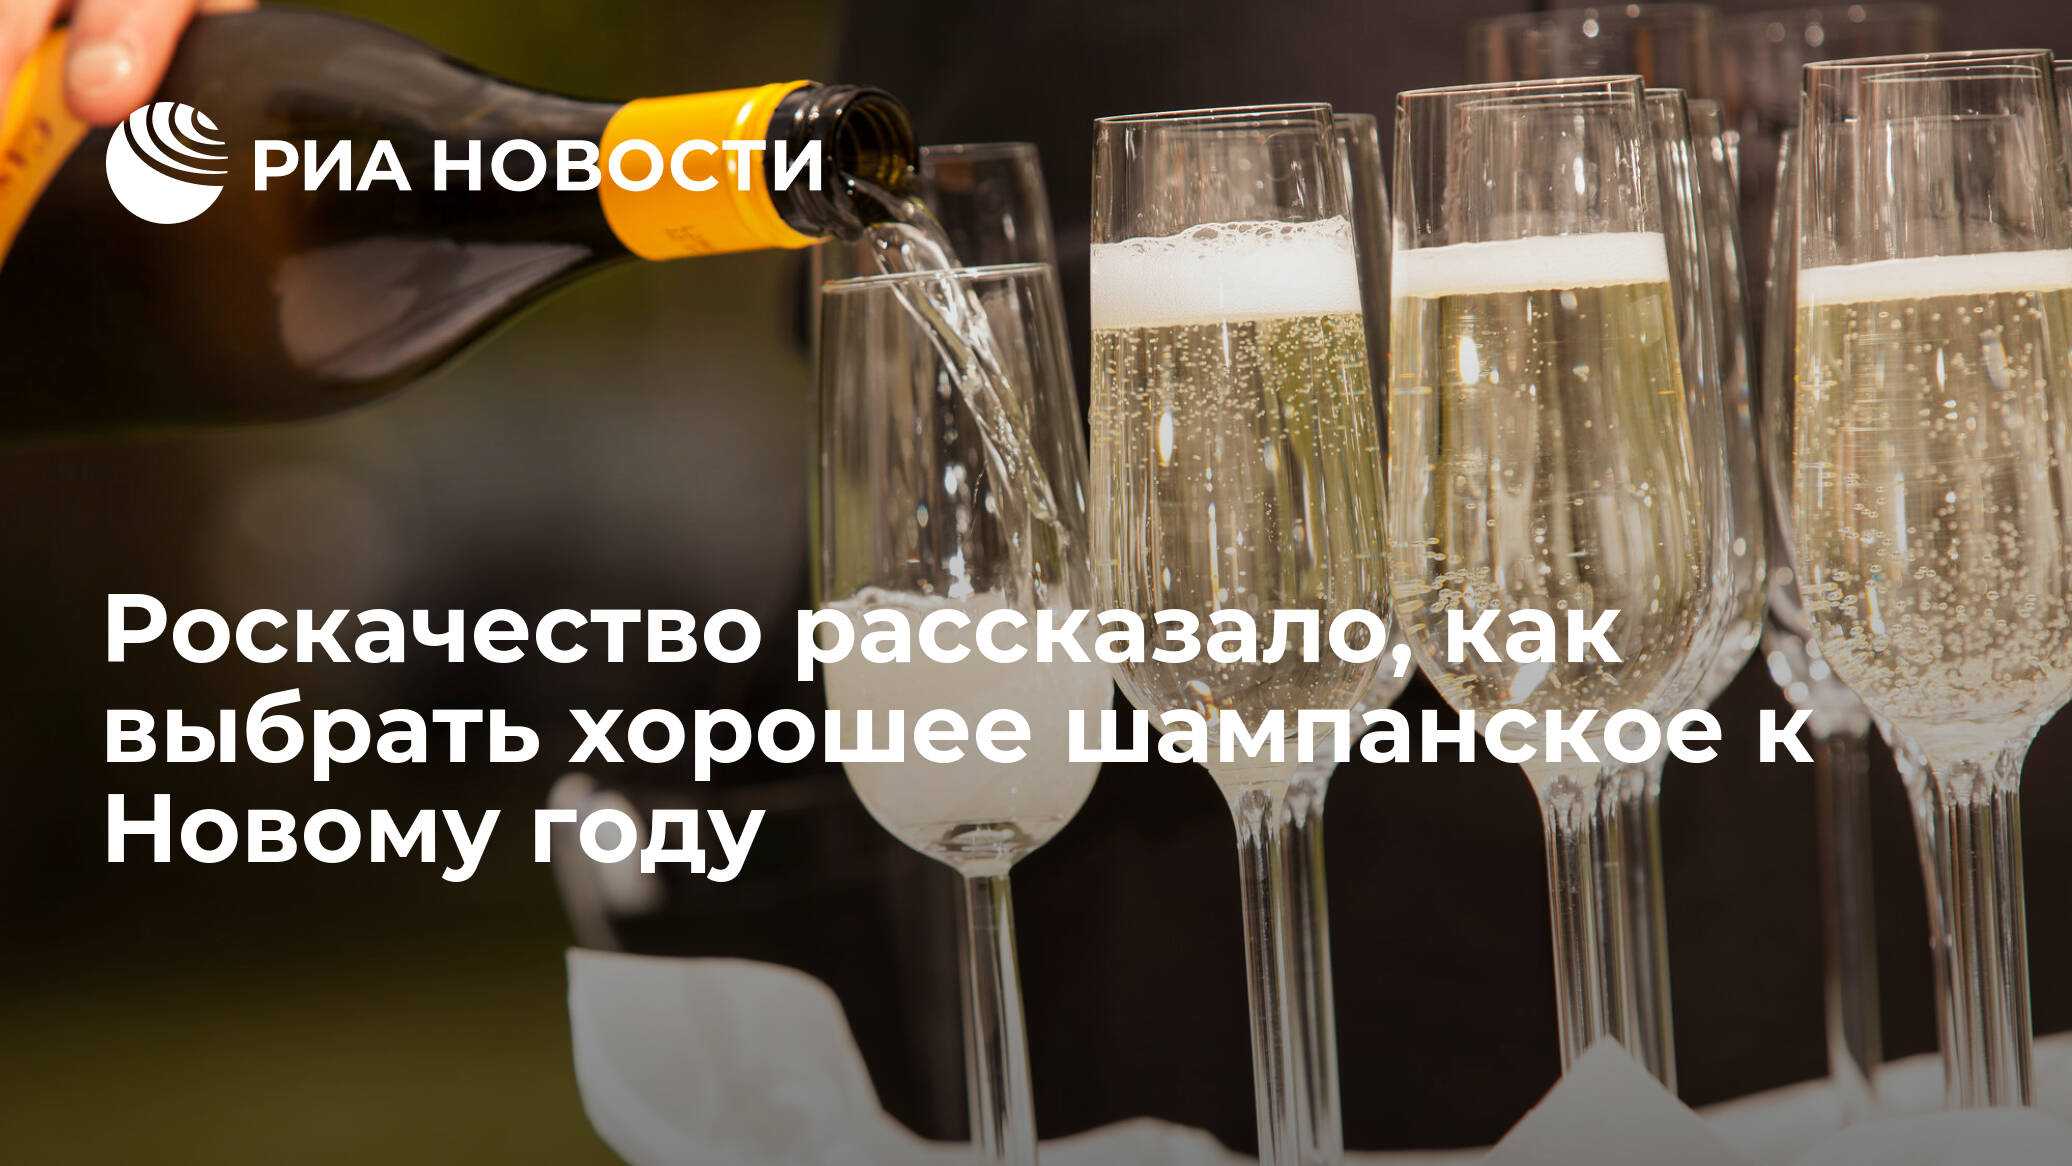 Лучшие вина россии на 2021 год по версии роскачества